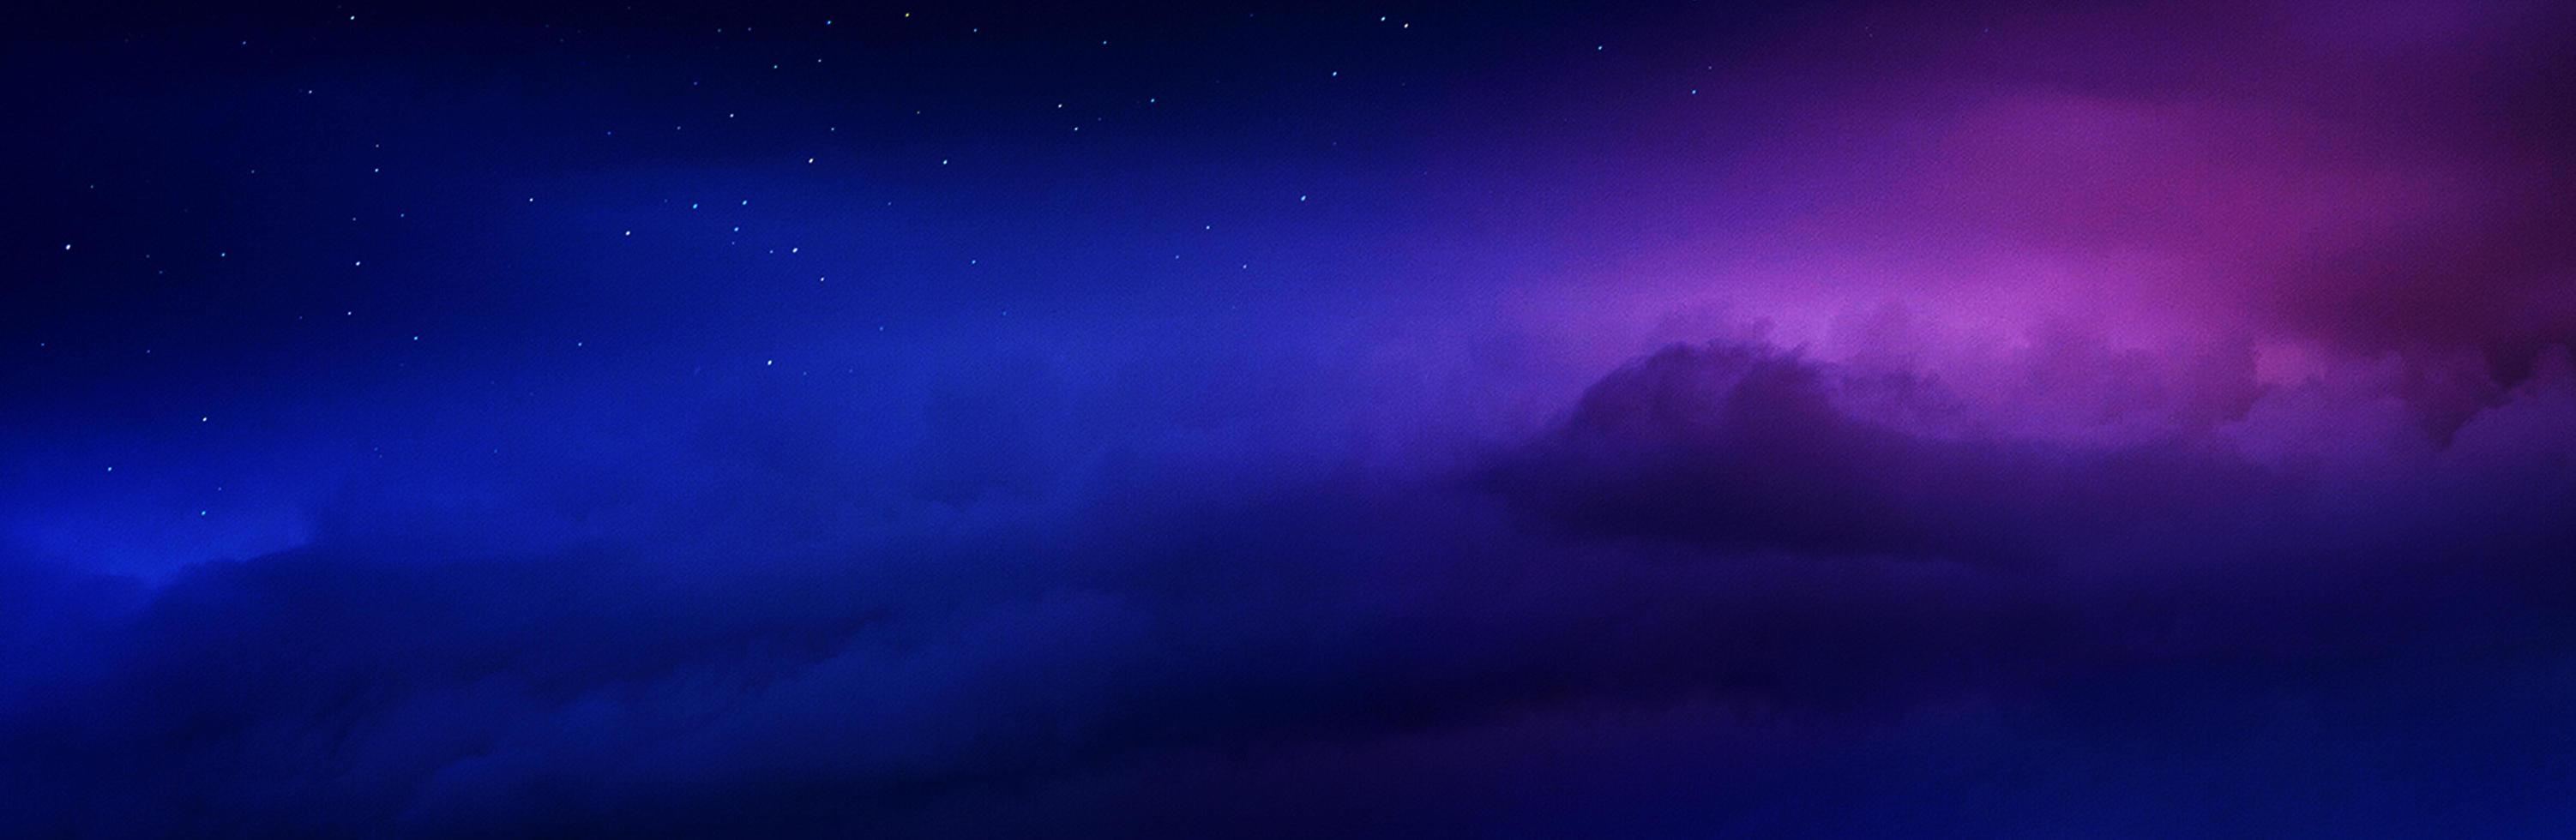 hell leuchtend lila farben echt romantischer sonnenuntergang himmel foto